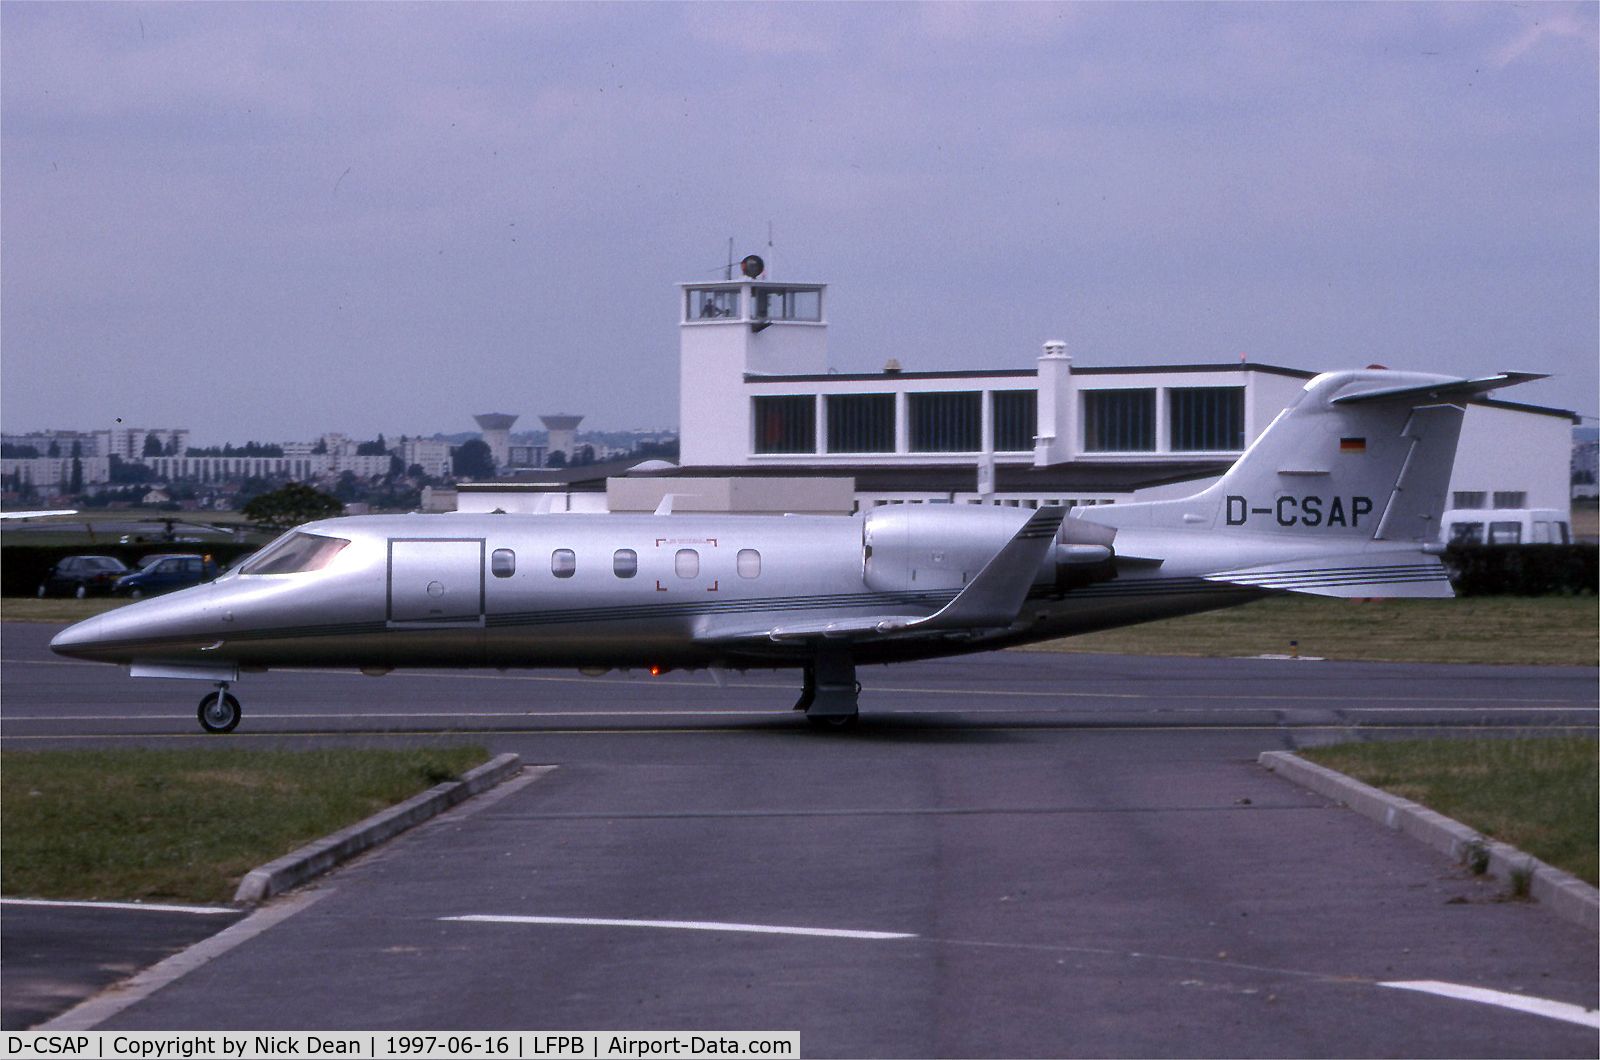 D-CSAP, 1992 Learjet 31A C/N 31-057, LFPB Paris Le Bourget